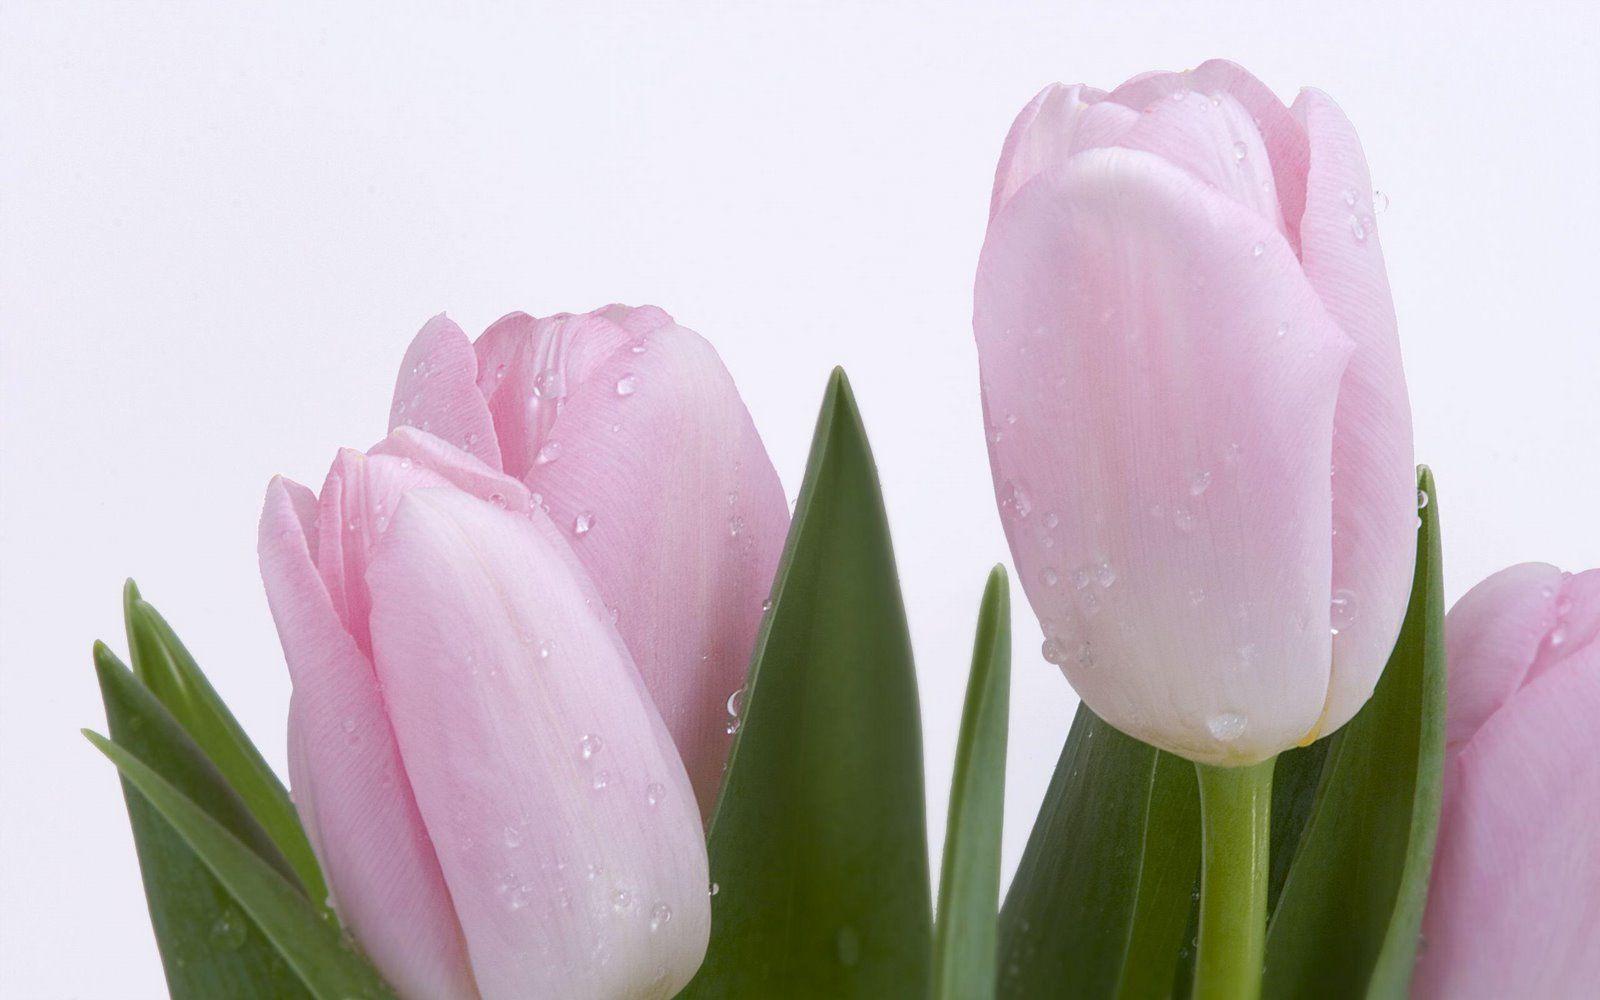 fond d écran tulipe rose